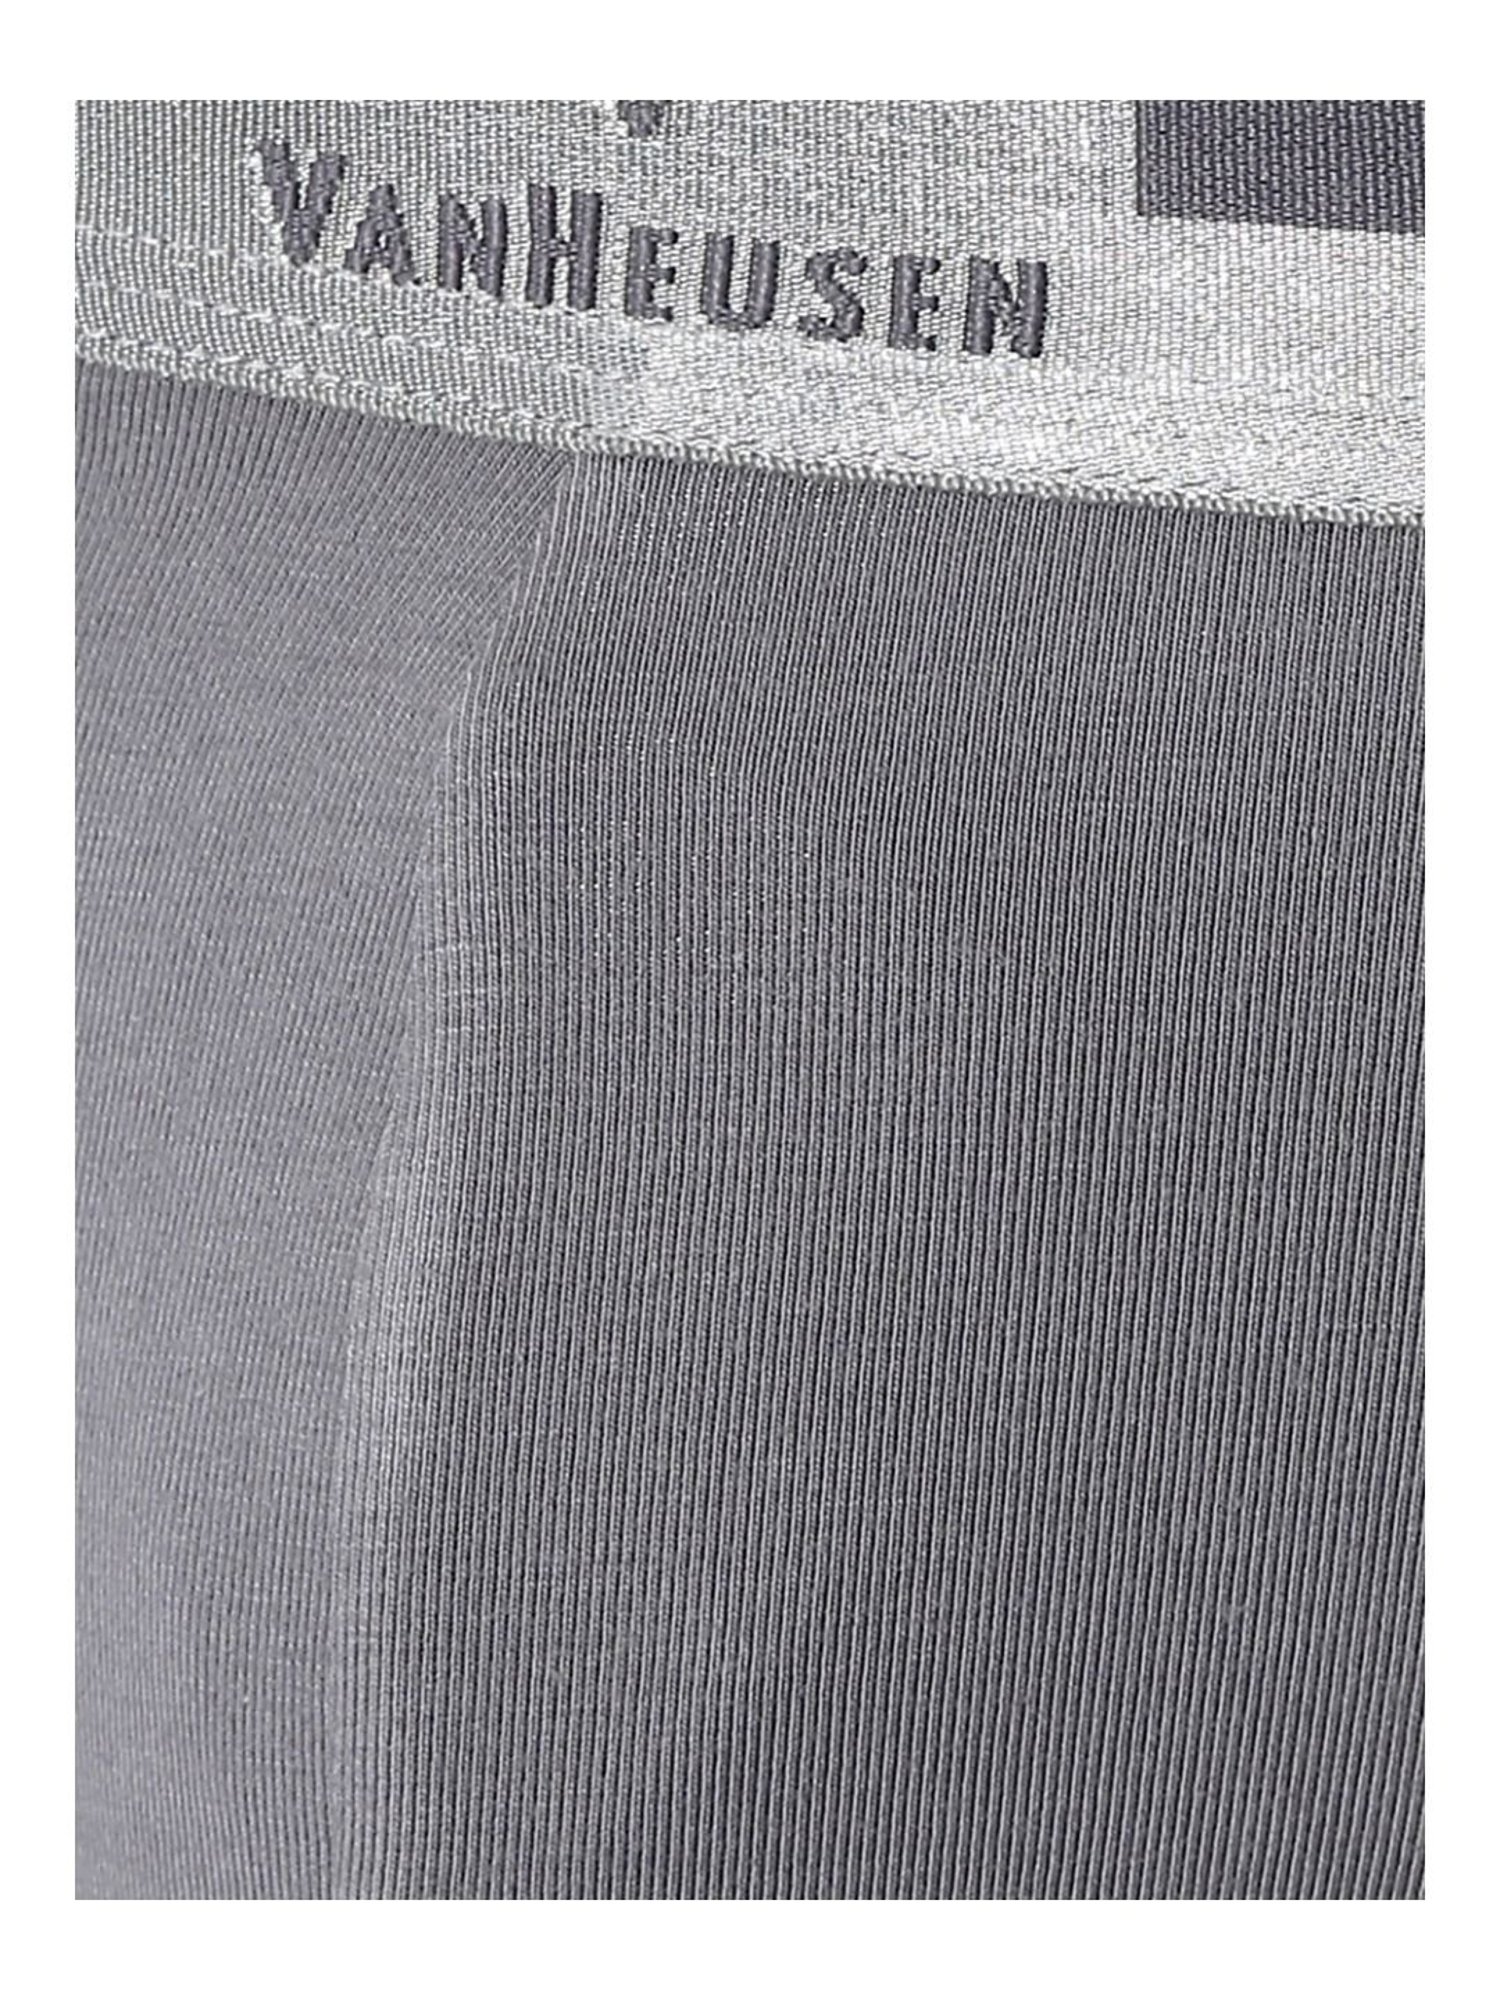 VH Innerwear Grey Cotton Briefs